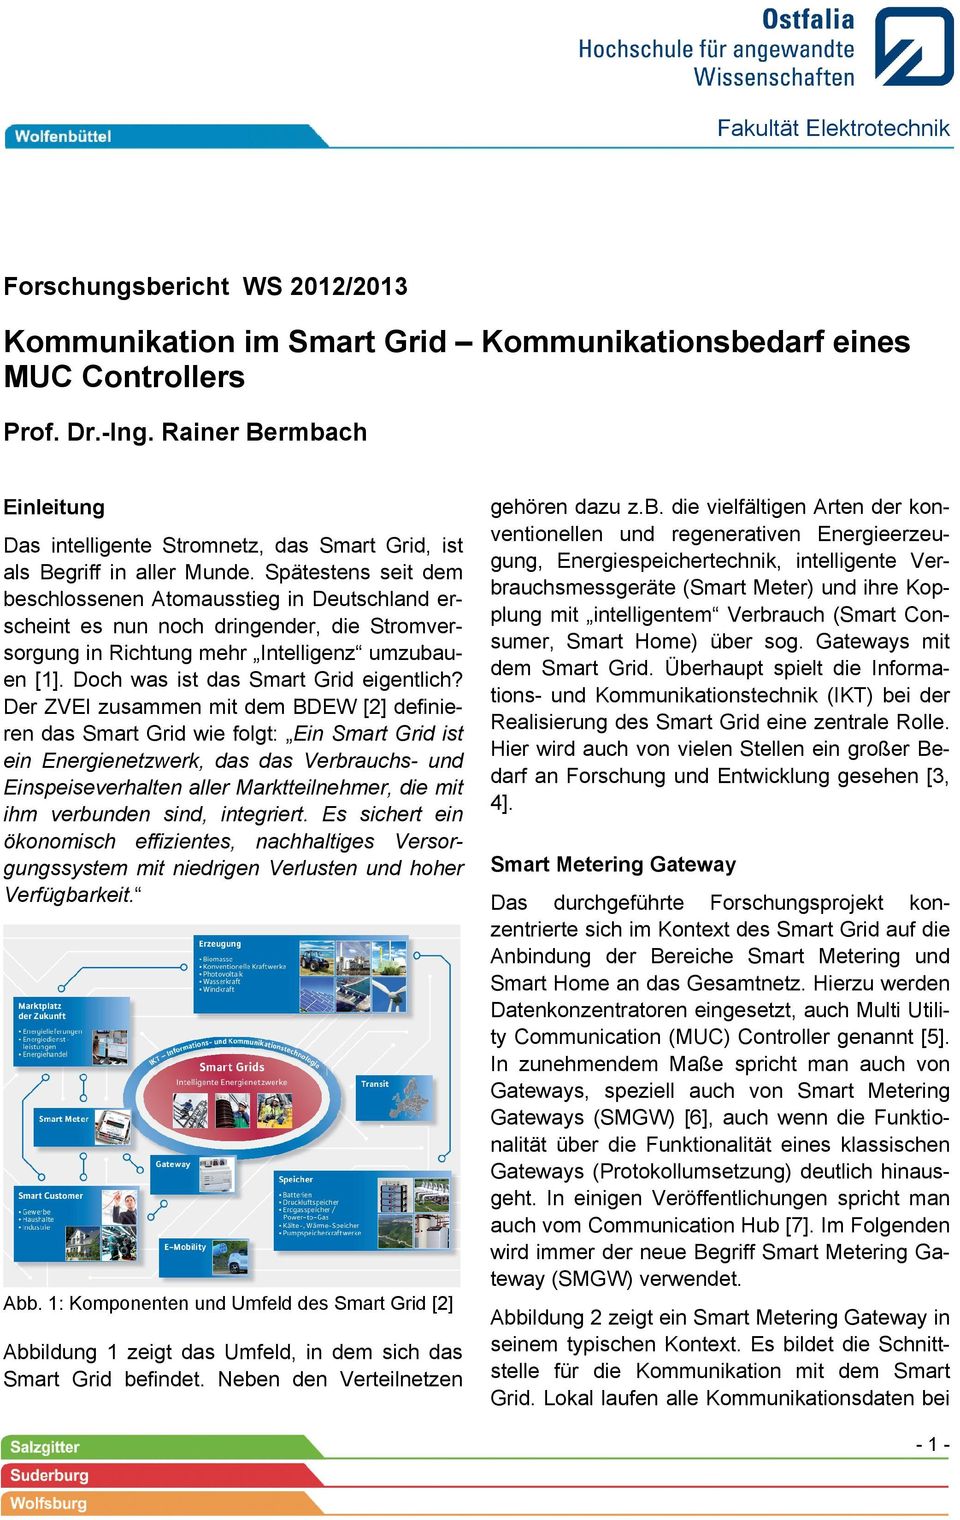 Spätestens seit dem beschlossenen Atomausstieg in Deutschland erscheint es nun noch dringender, die Stromversorgung in Richtung mehr Intelligenz umzubauen [1]. Doch was ist das Smart Grid eigentlich?